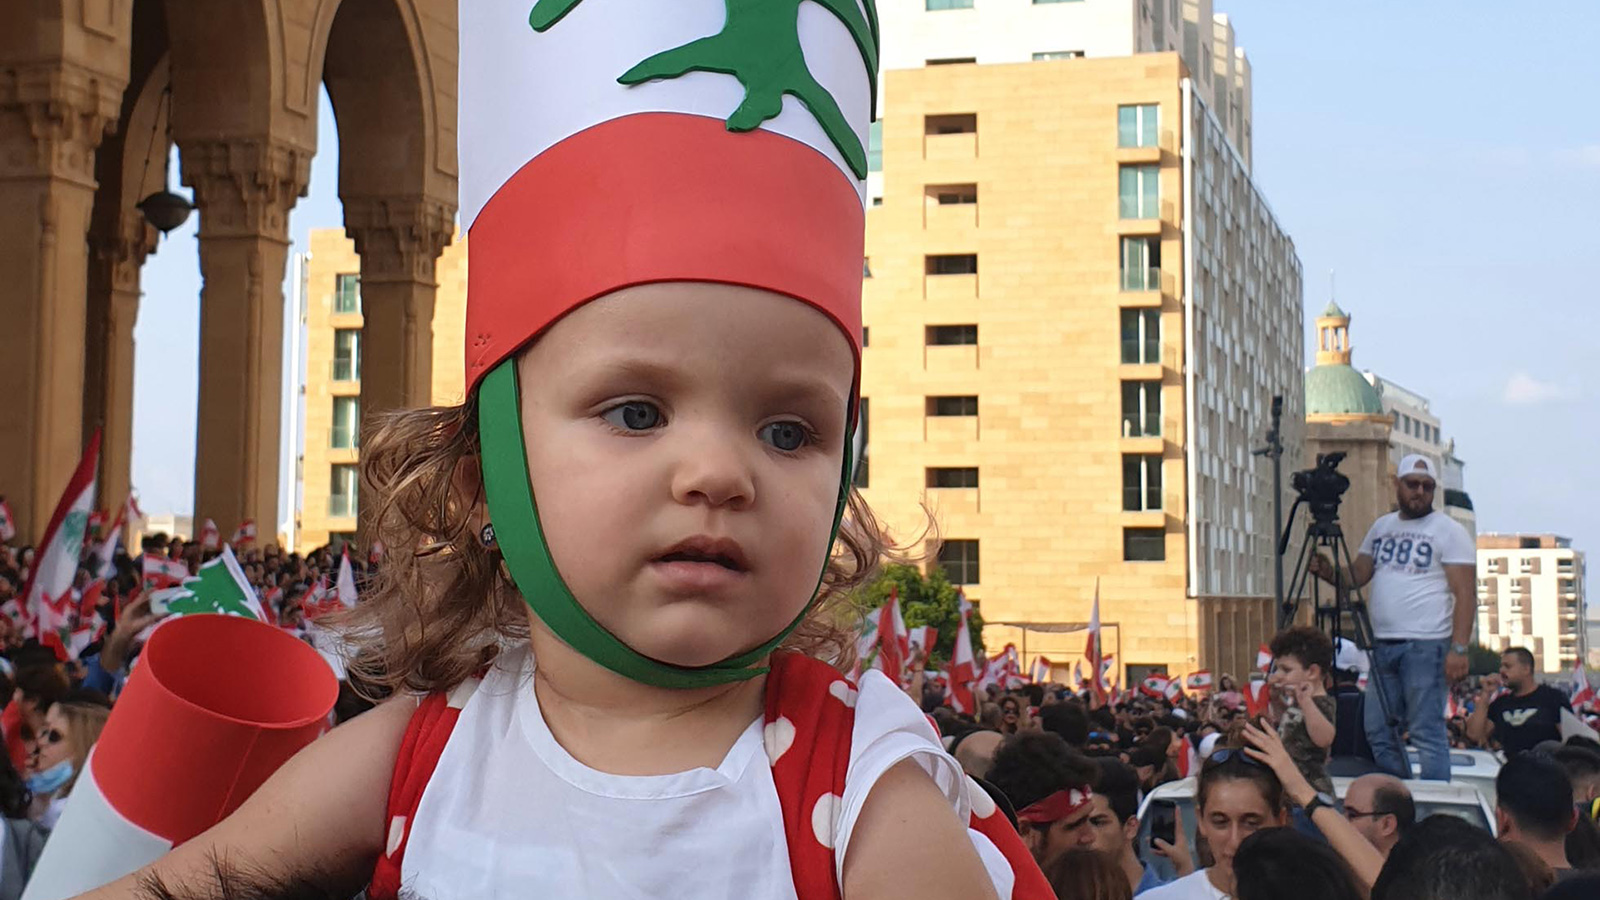 اللبنانيون شاركوا بجميع أطيافهم في المظاهرات (الجزيرة)